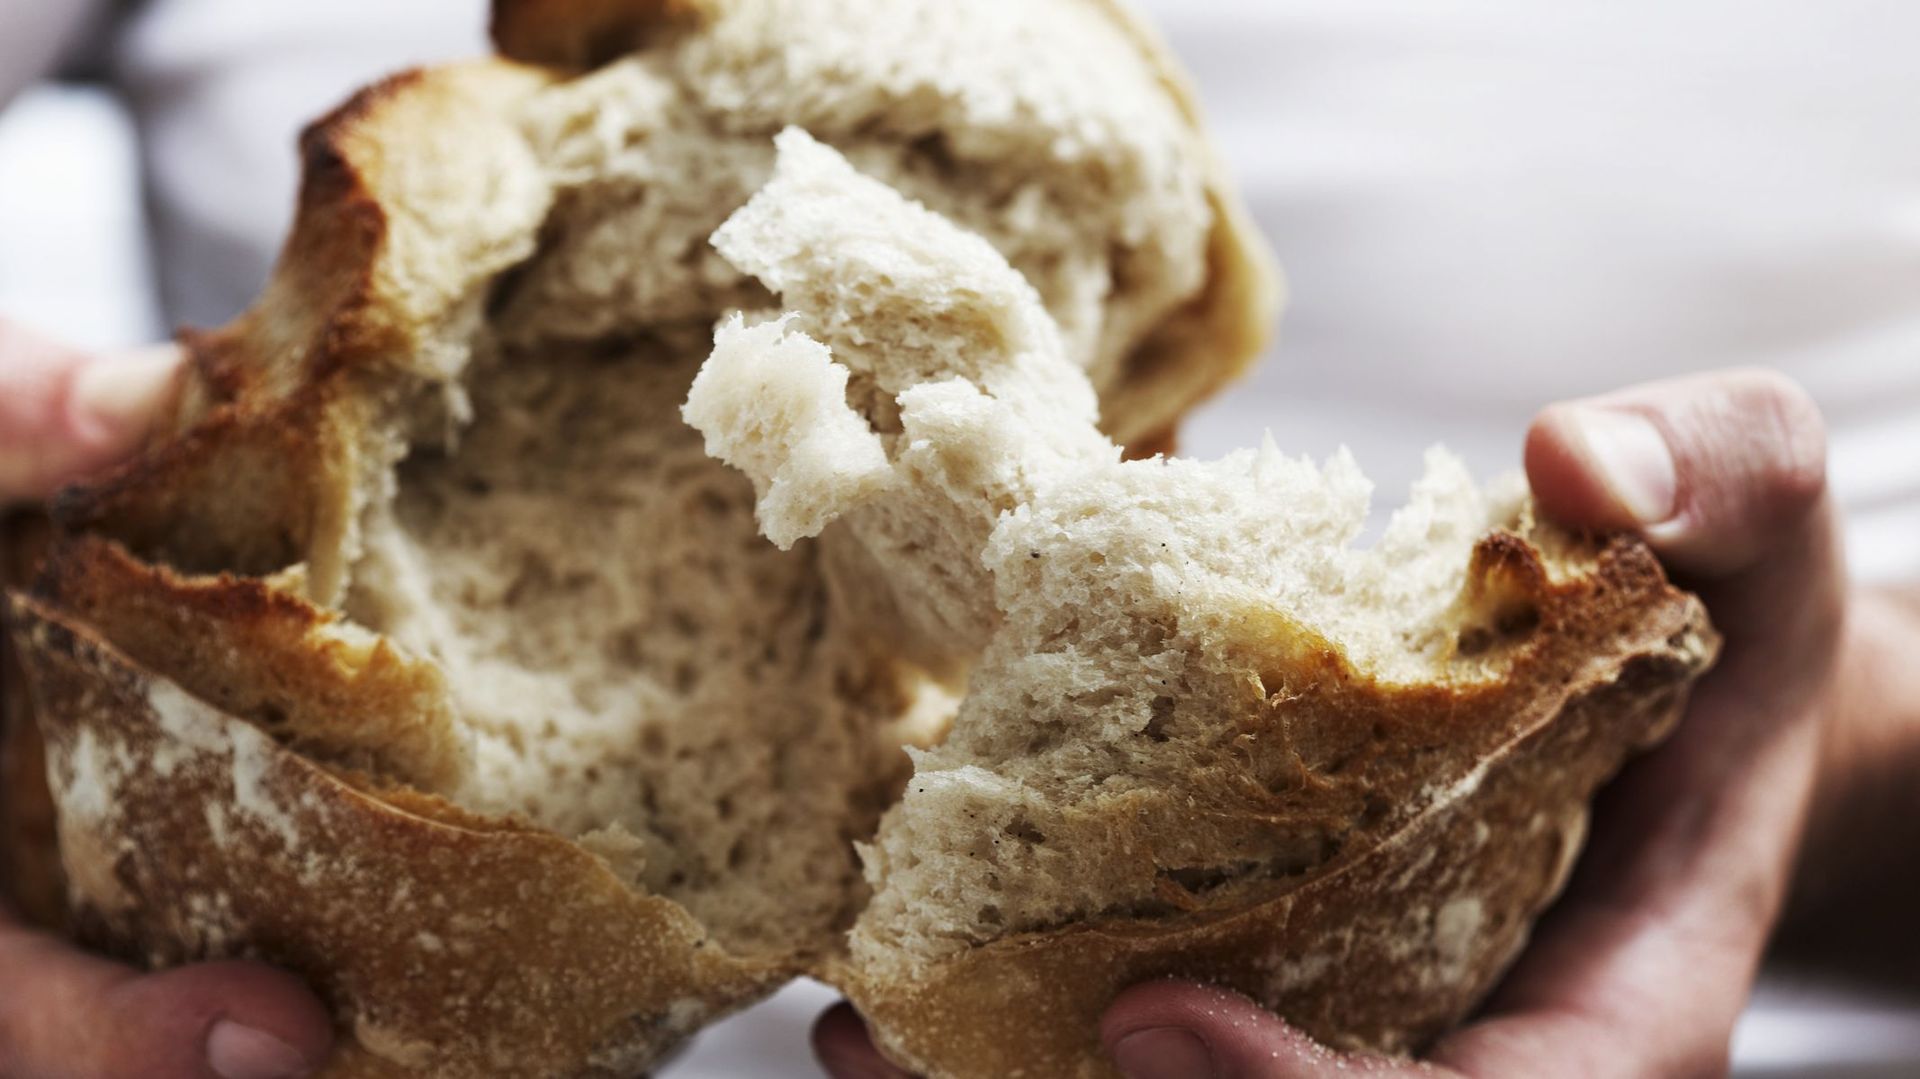 Le pain : ami ou ennemi de notre équilibre alimentaire ?